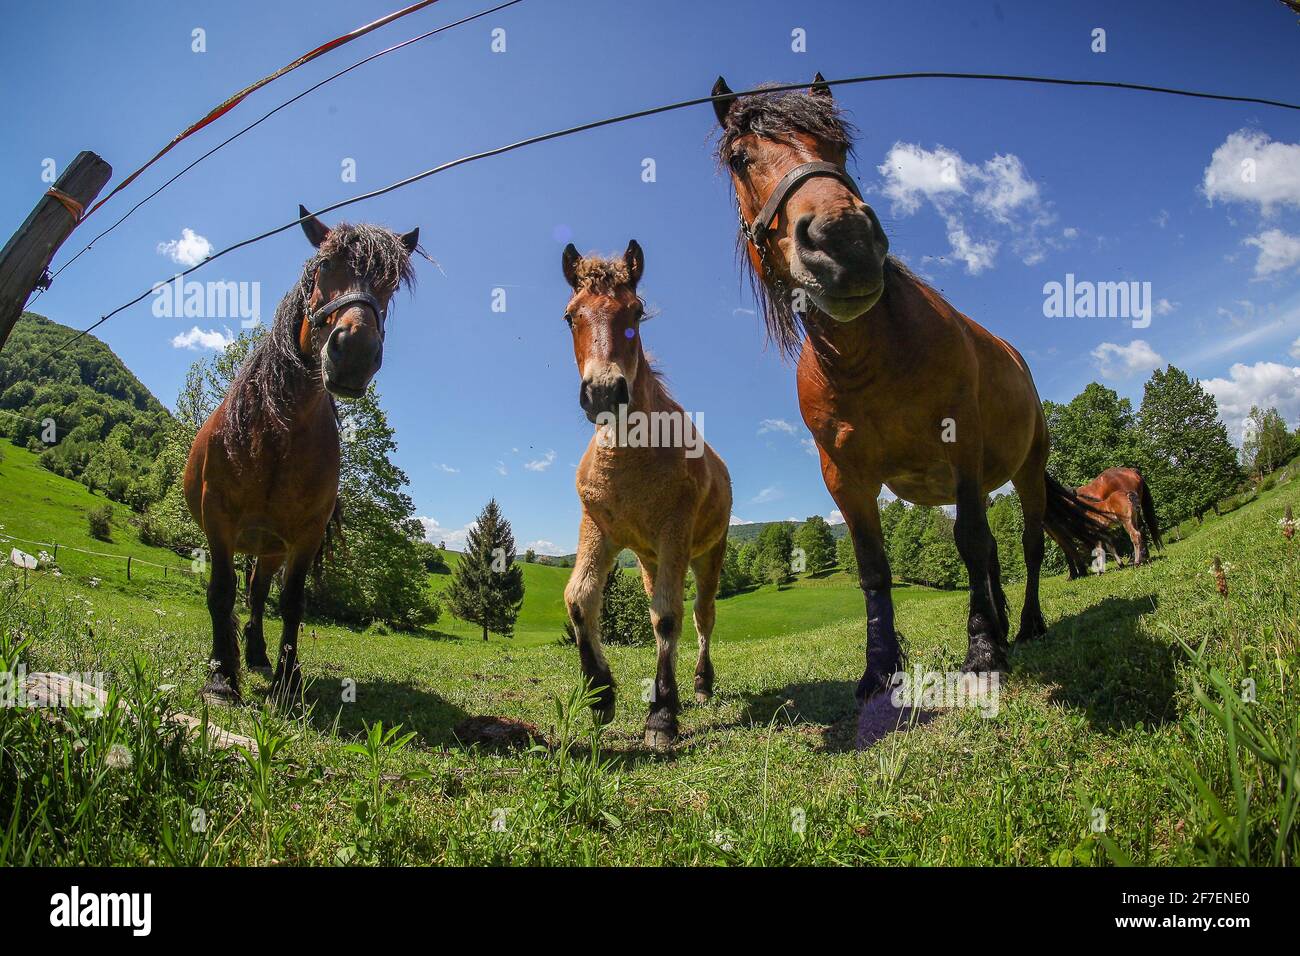 Un gruppo di cavalli bruni che si nutrono in un campo, dietro una recinzione elettrica. Immagine fisheye dal suolo. Foto Stock